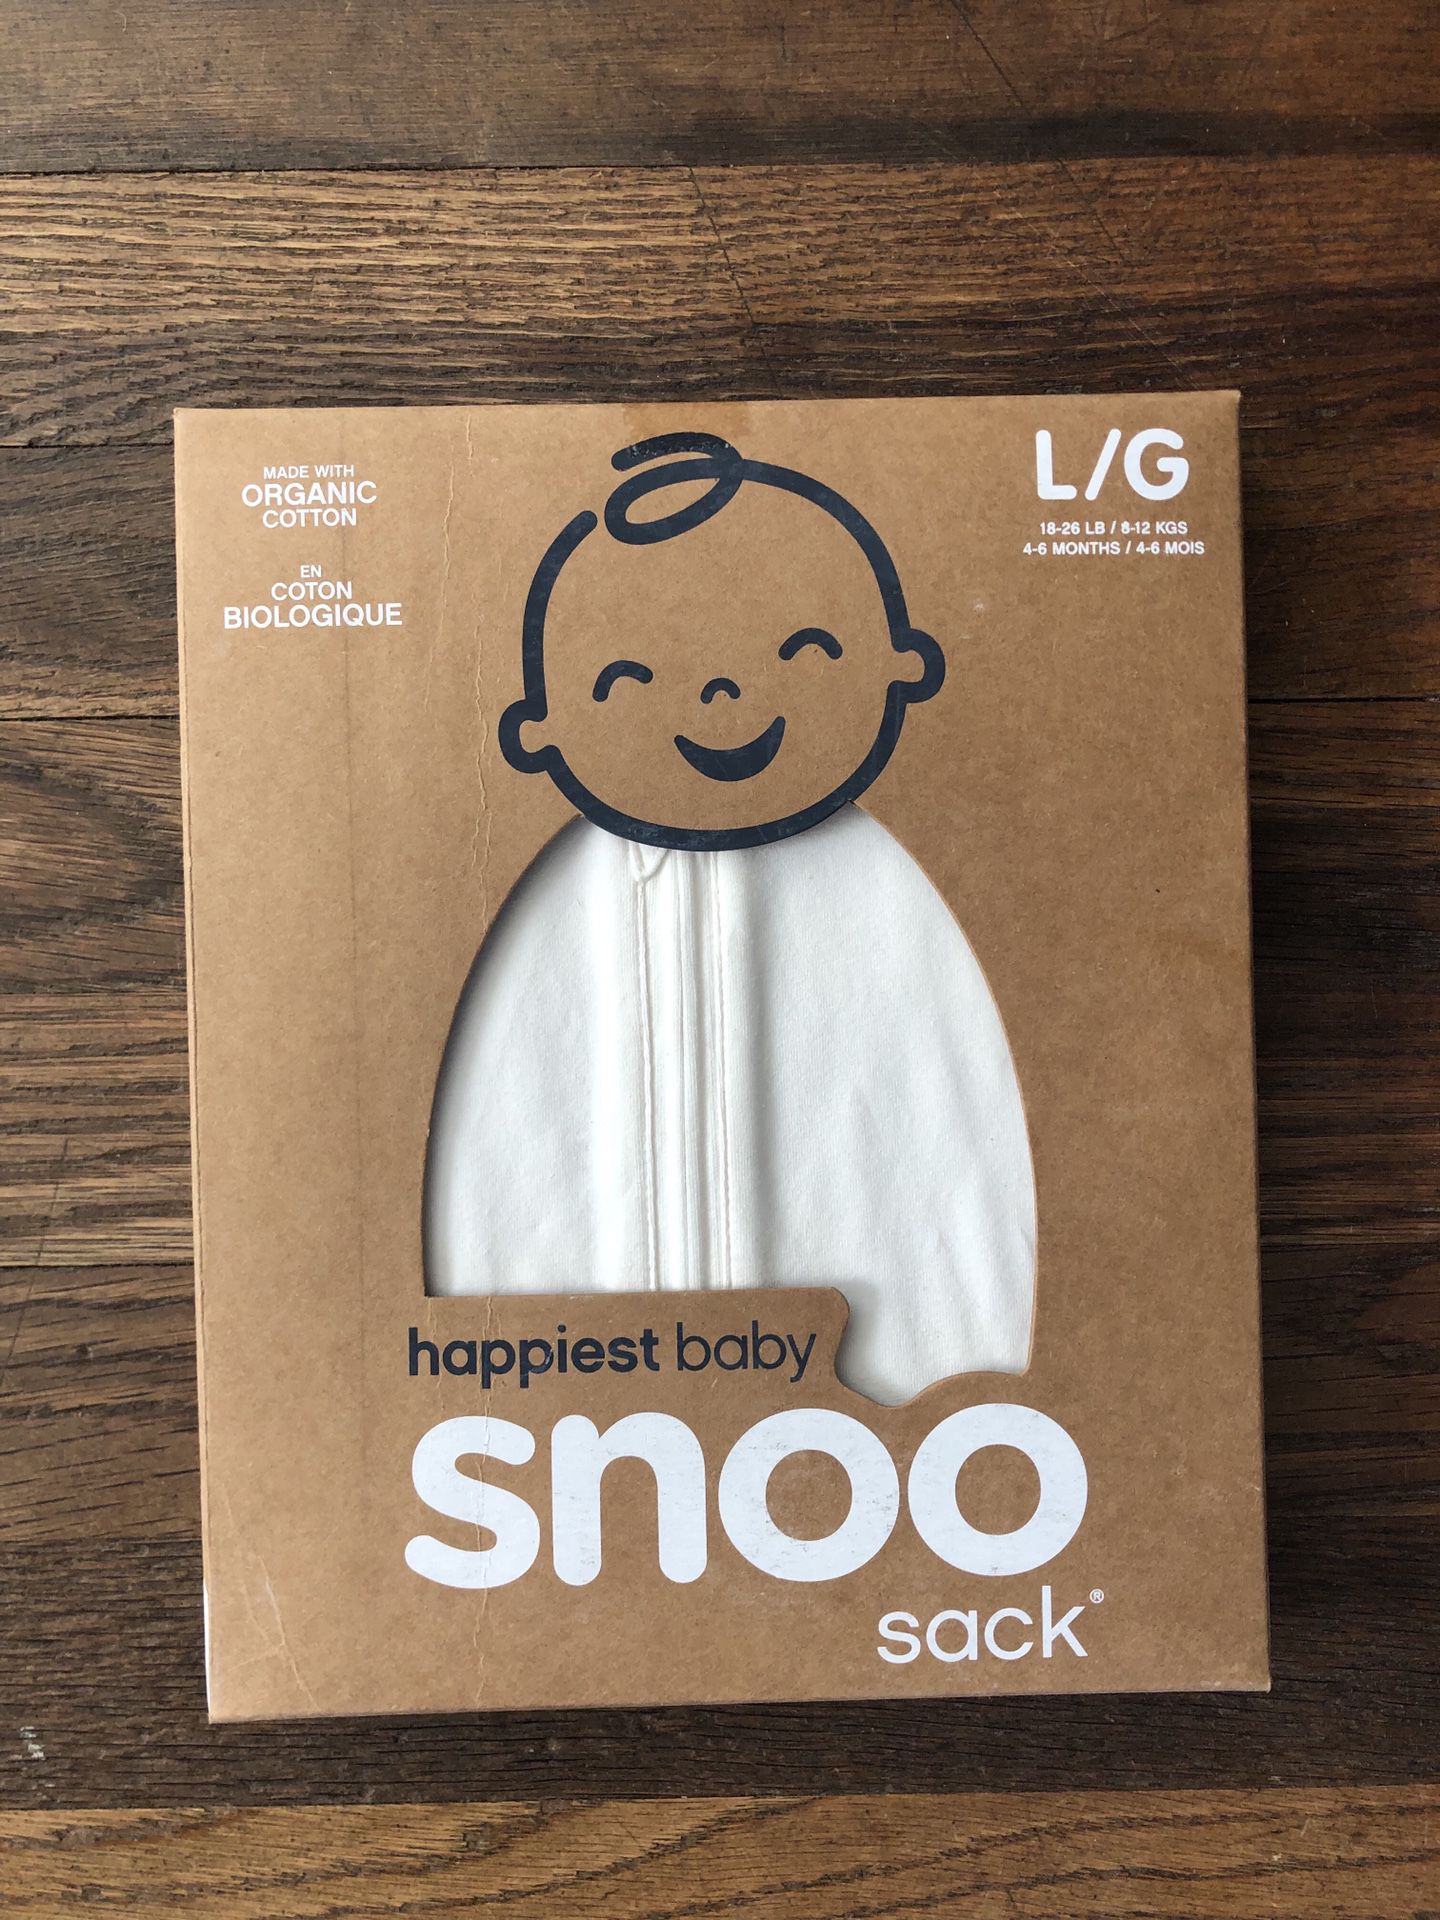 New Snoo Sleep Sack - Small and Large